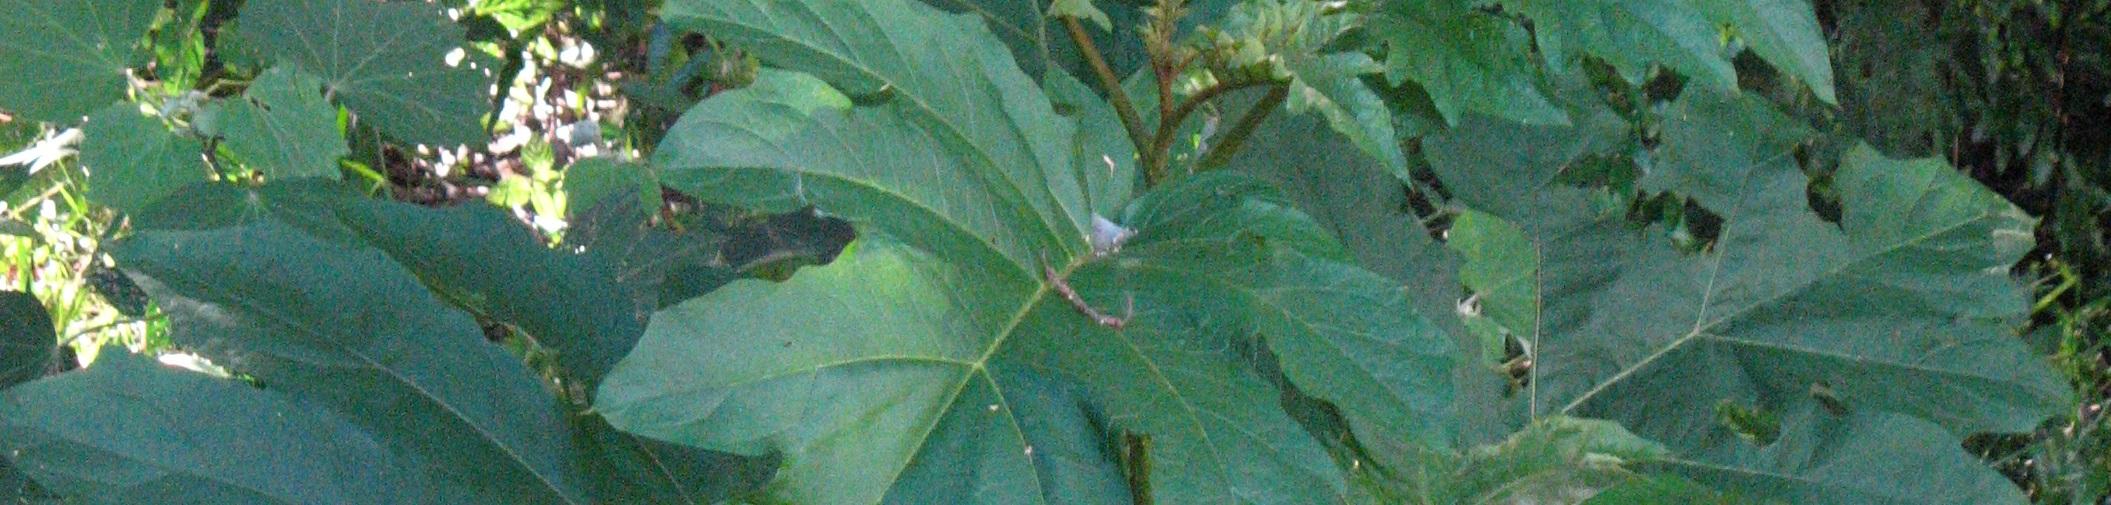 Giant devils fig leaf up close.